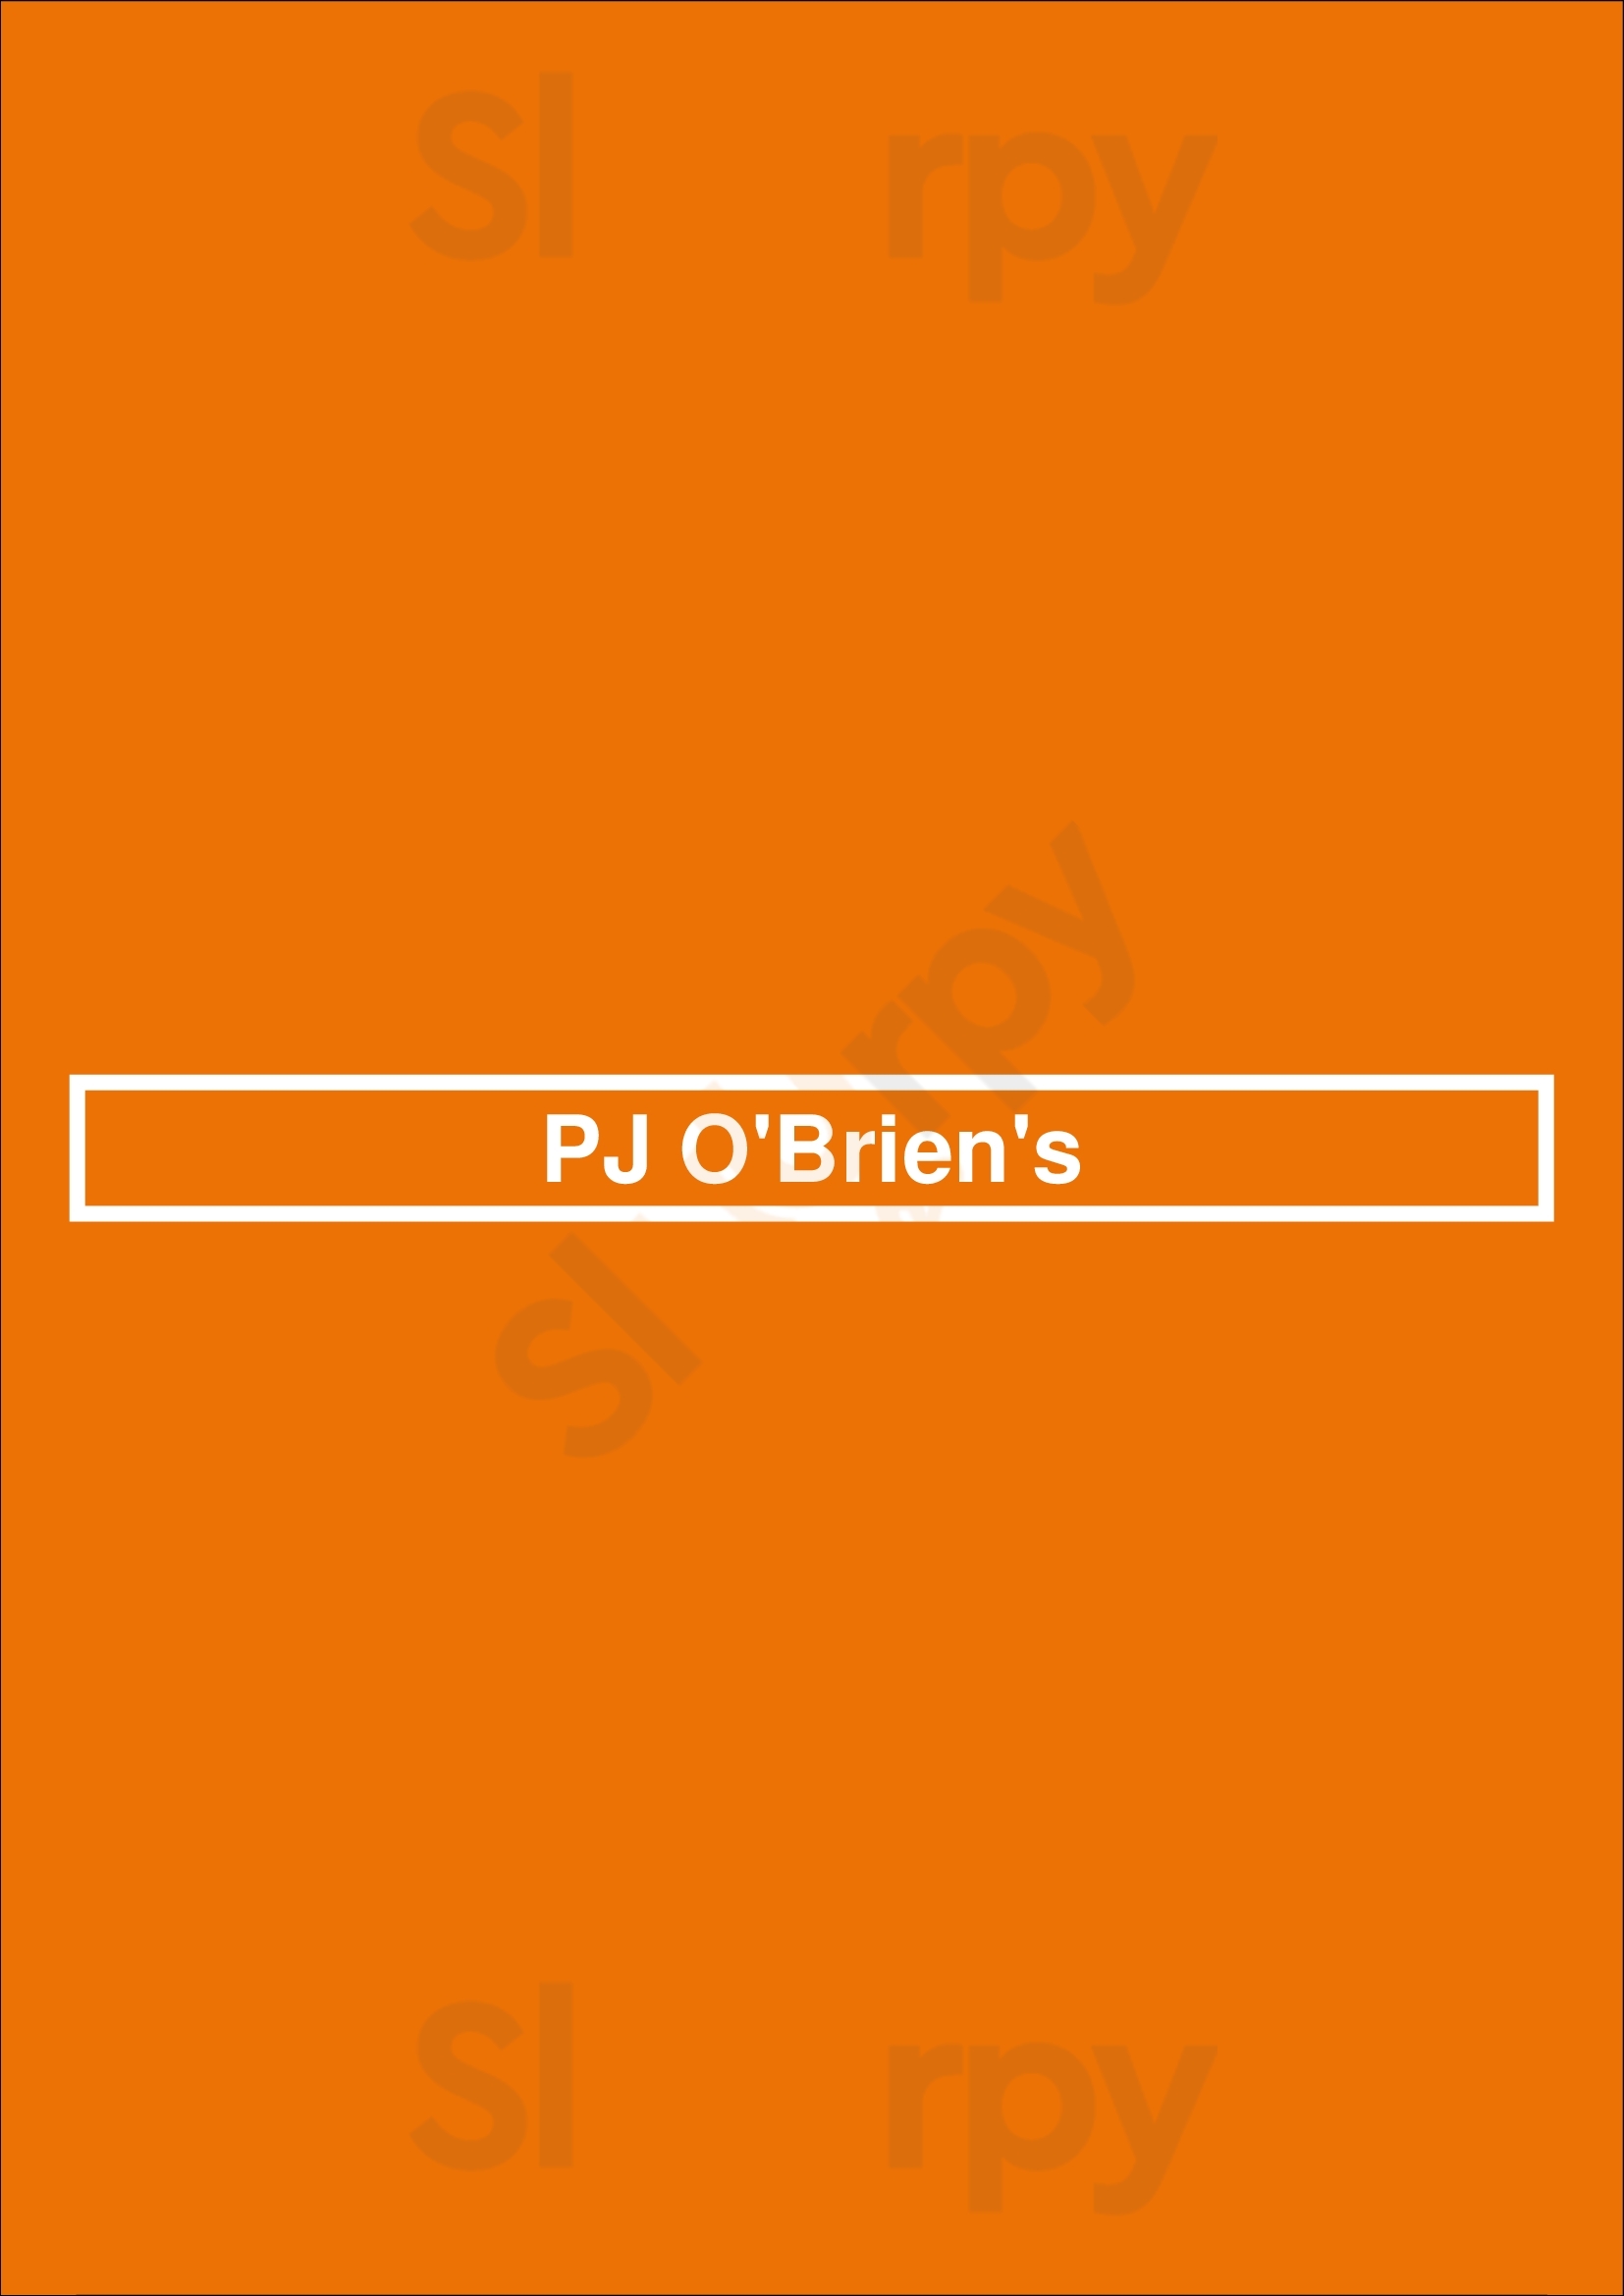 P.j.o'brien's Irish Pub Sydney Menu - 1